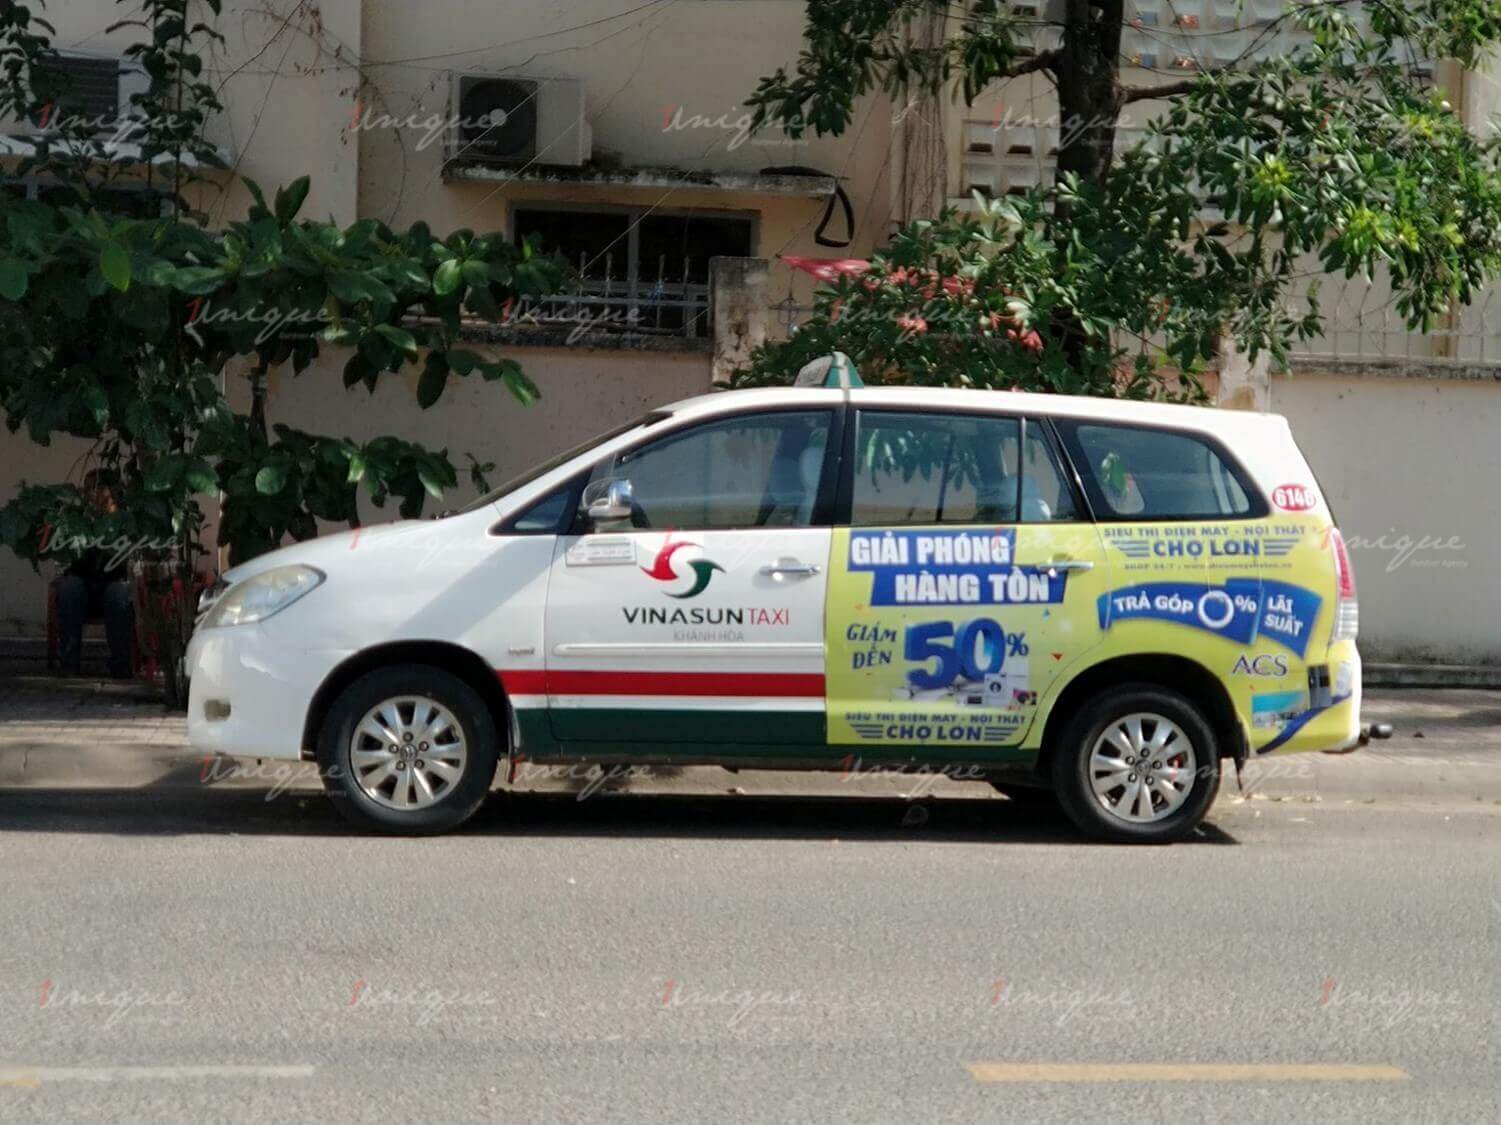 quảng cáo trên taxi Vinasun